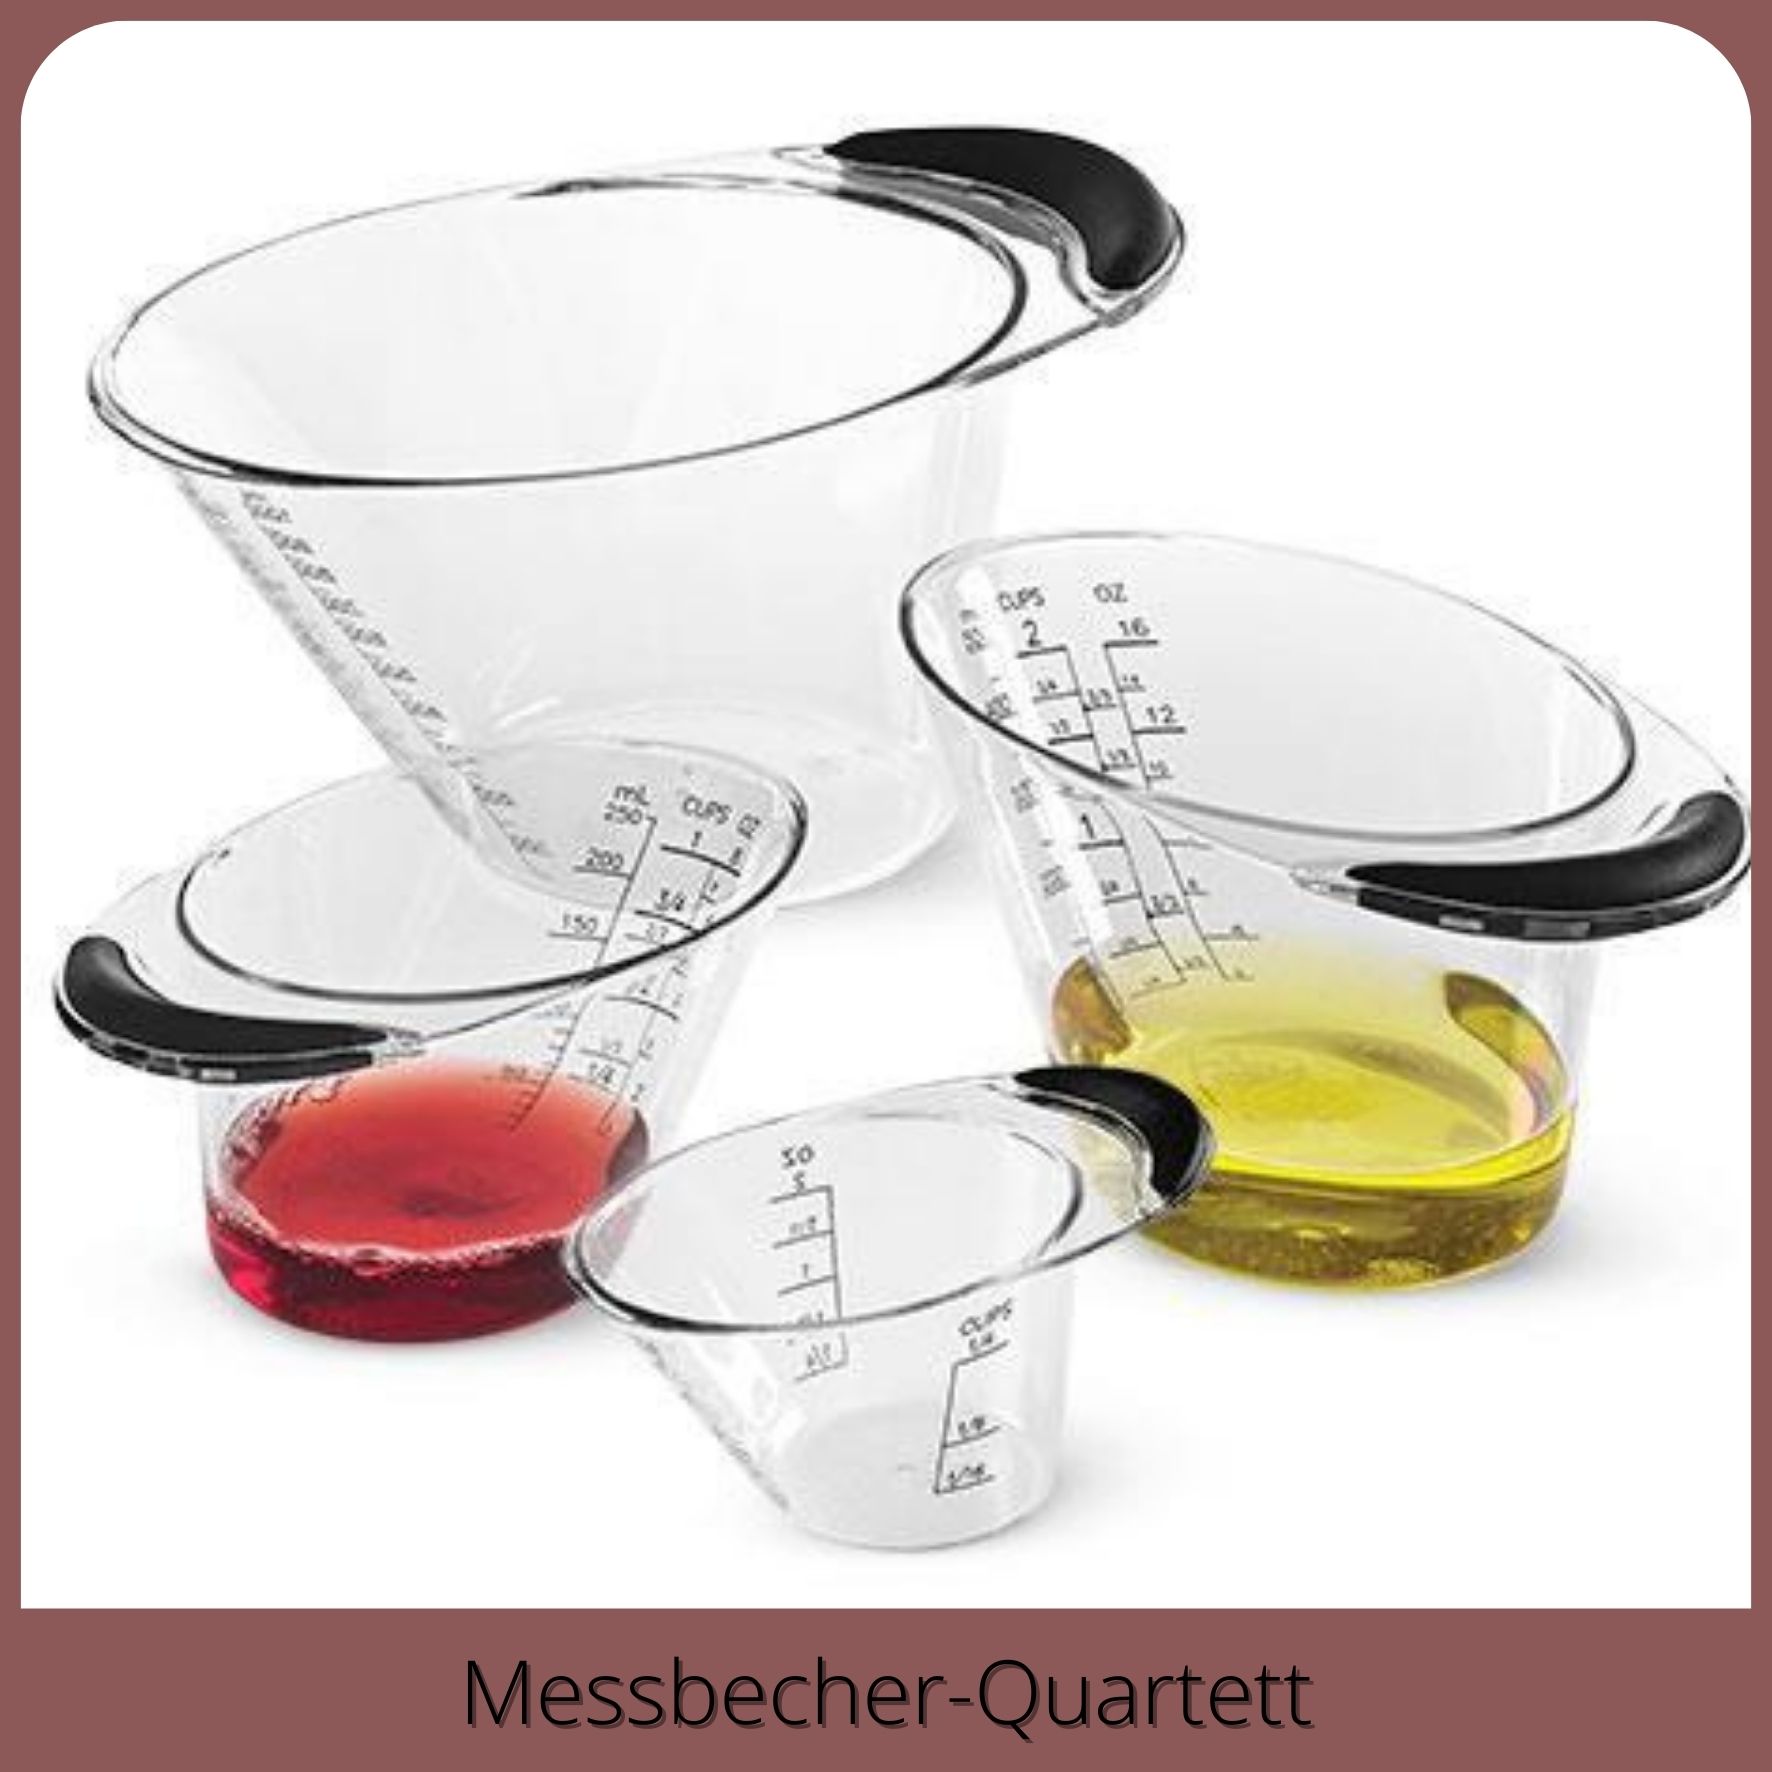 messbecher quartett